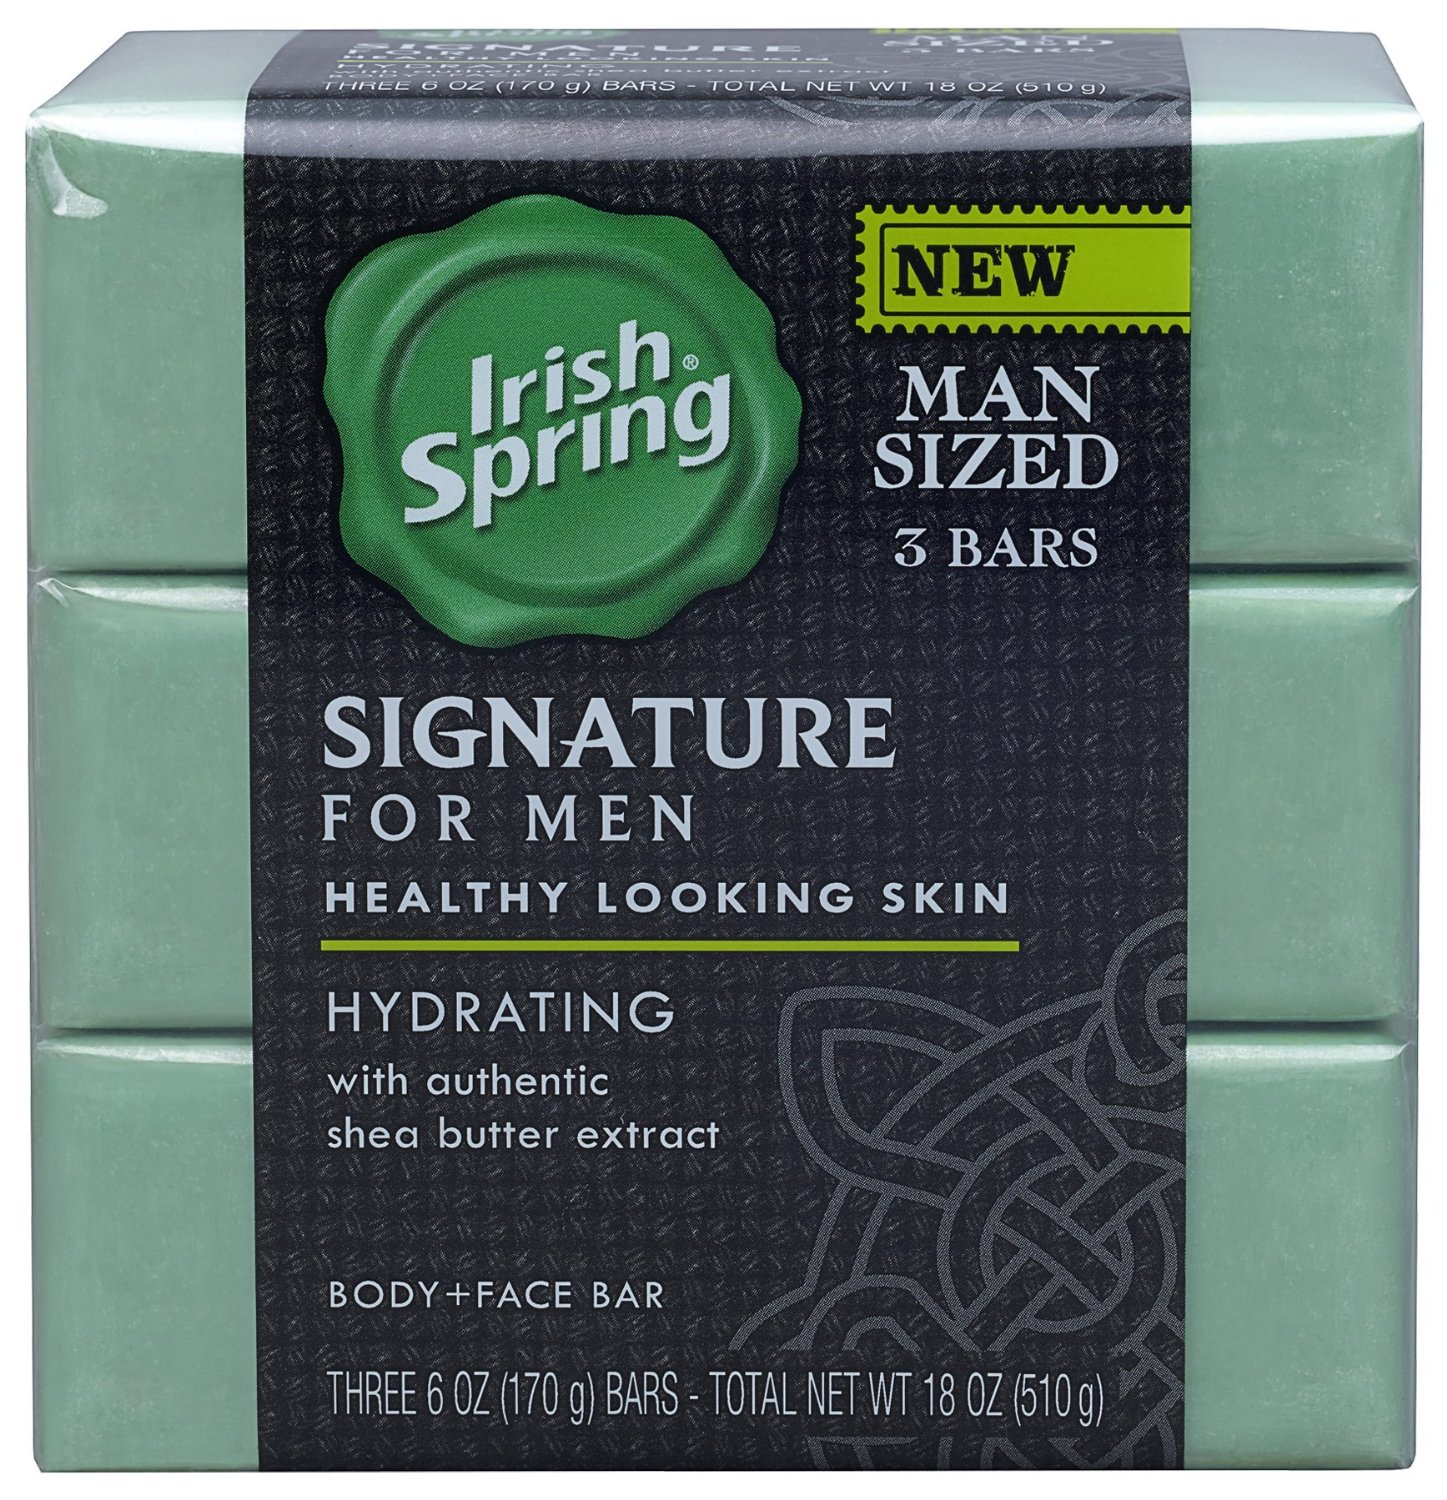 Irish Spring Signature Hydrating Bar Soap 6oz 3 bars